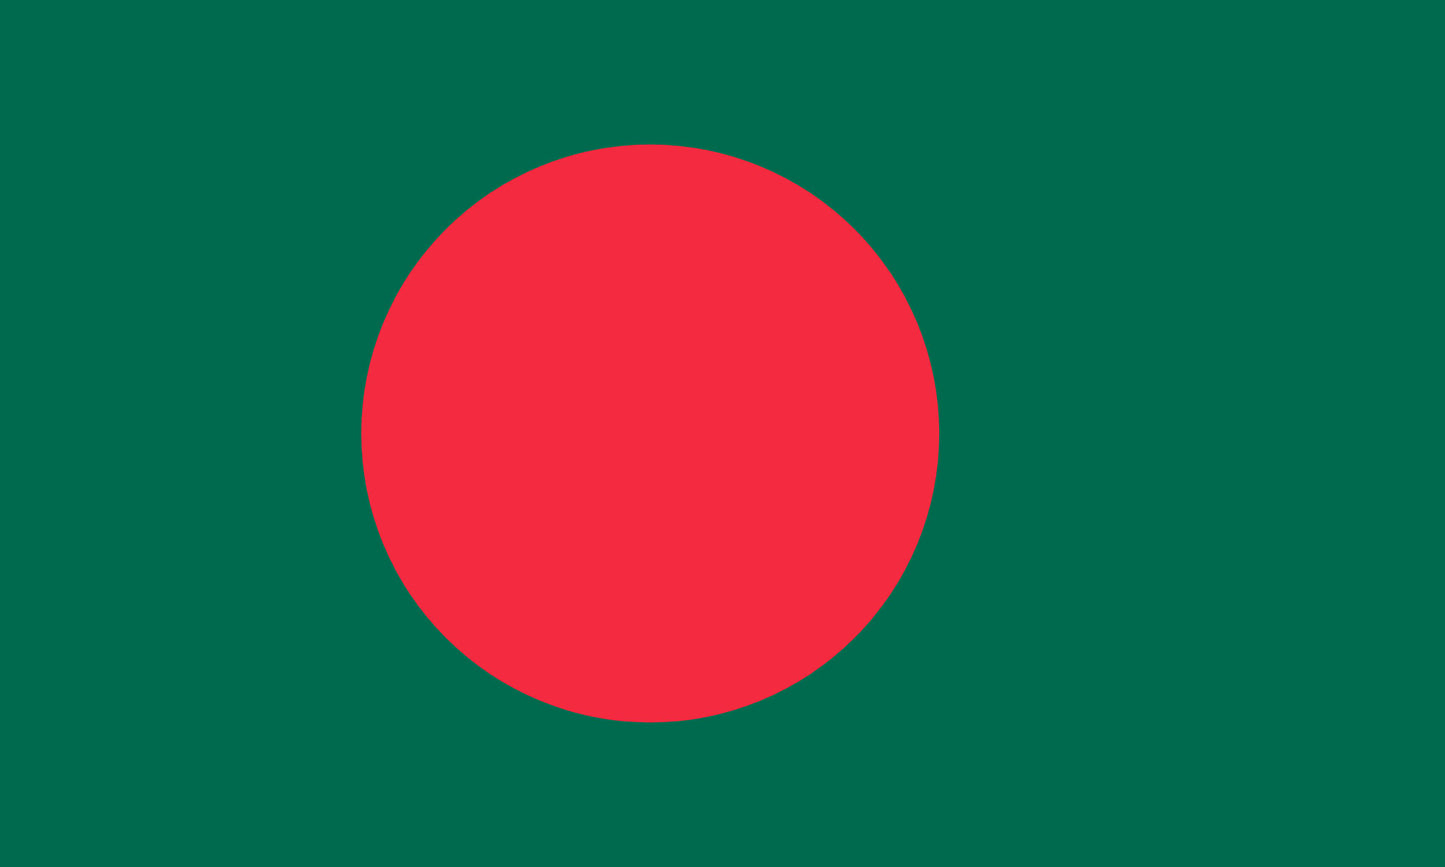 INR-BAN-15x22-2 - государственный флаг Народной Республики Бангладеш, размер: 15х22 см, материал: атлас. Печать с двух сторон. Подставка и шток приобретаются отдельно